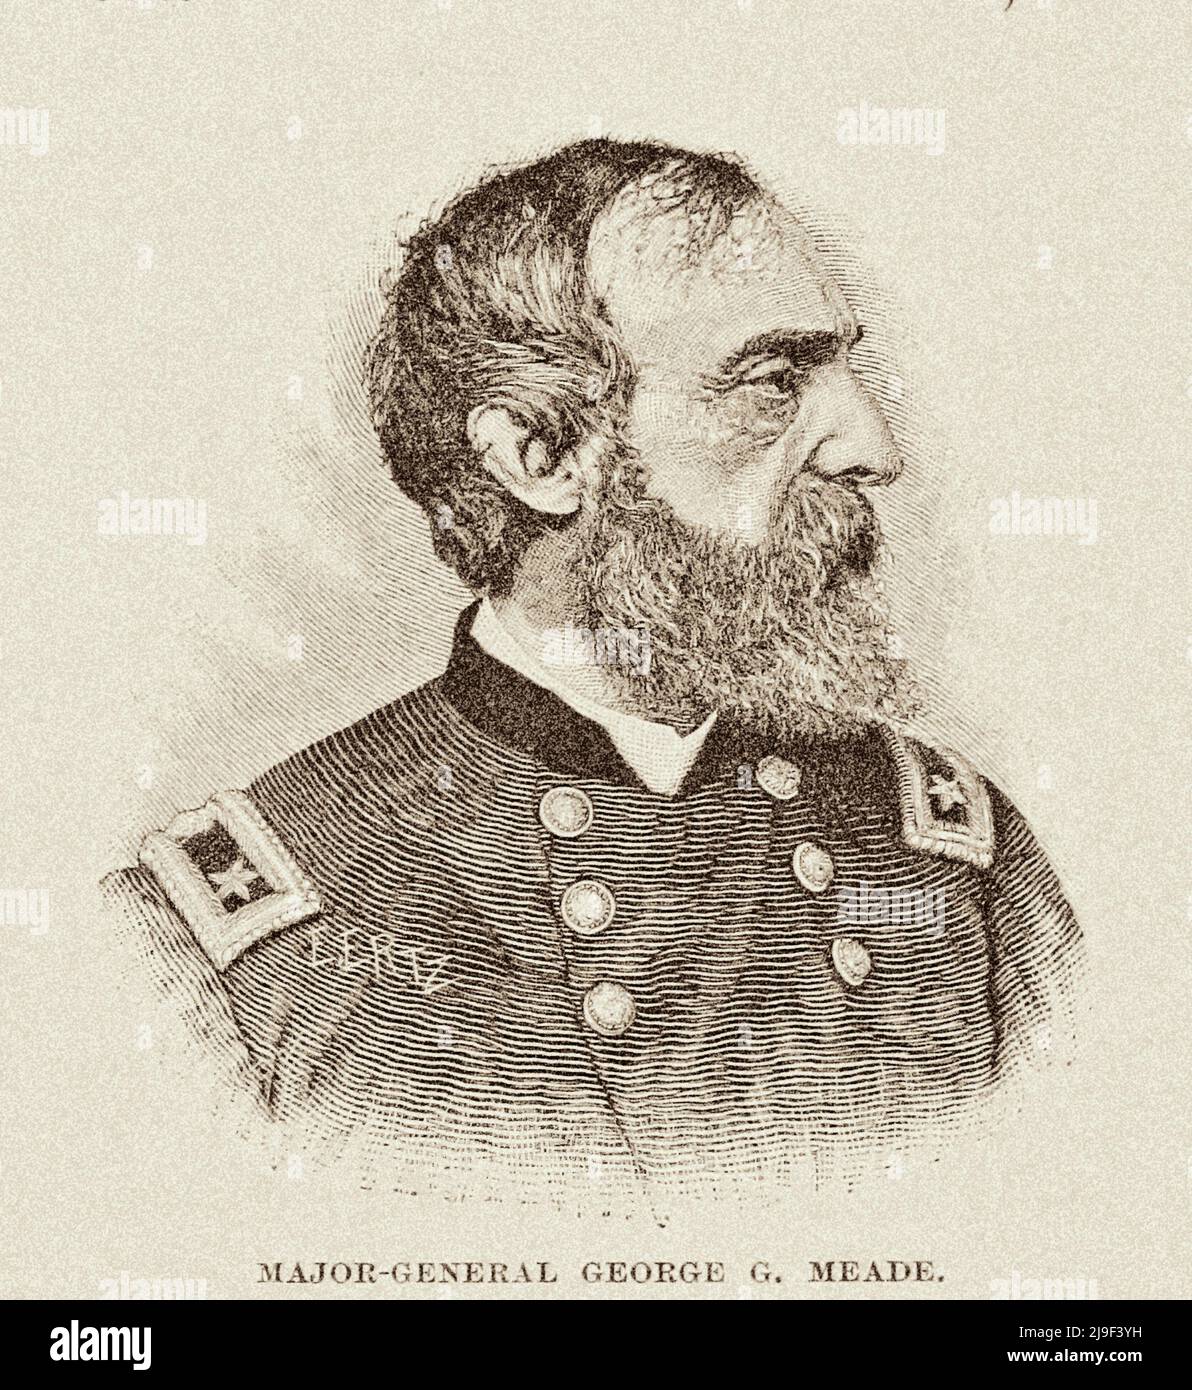 Guerra Civil Americana. Retrato del general de la Unión George Gordon Meade, oficial del Ejército de los Estados Unidos y Comandante del Ejército del Potomac Foto de stock